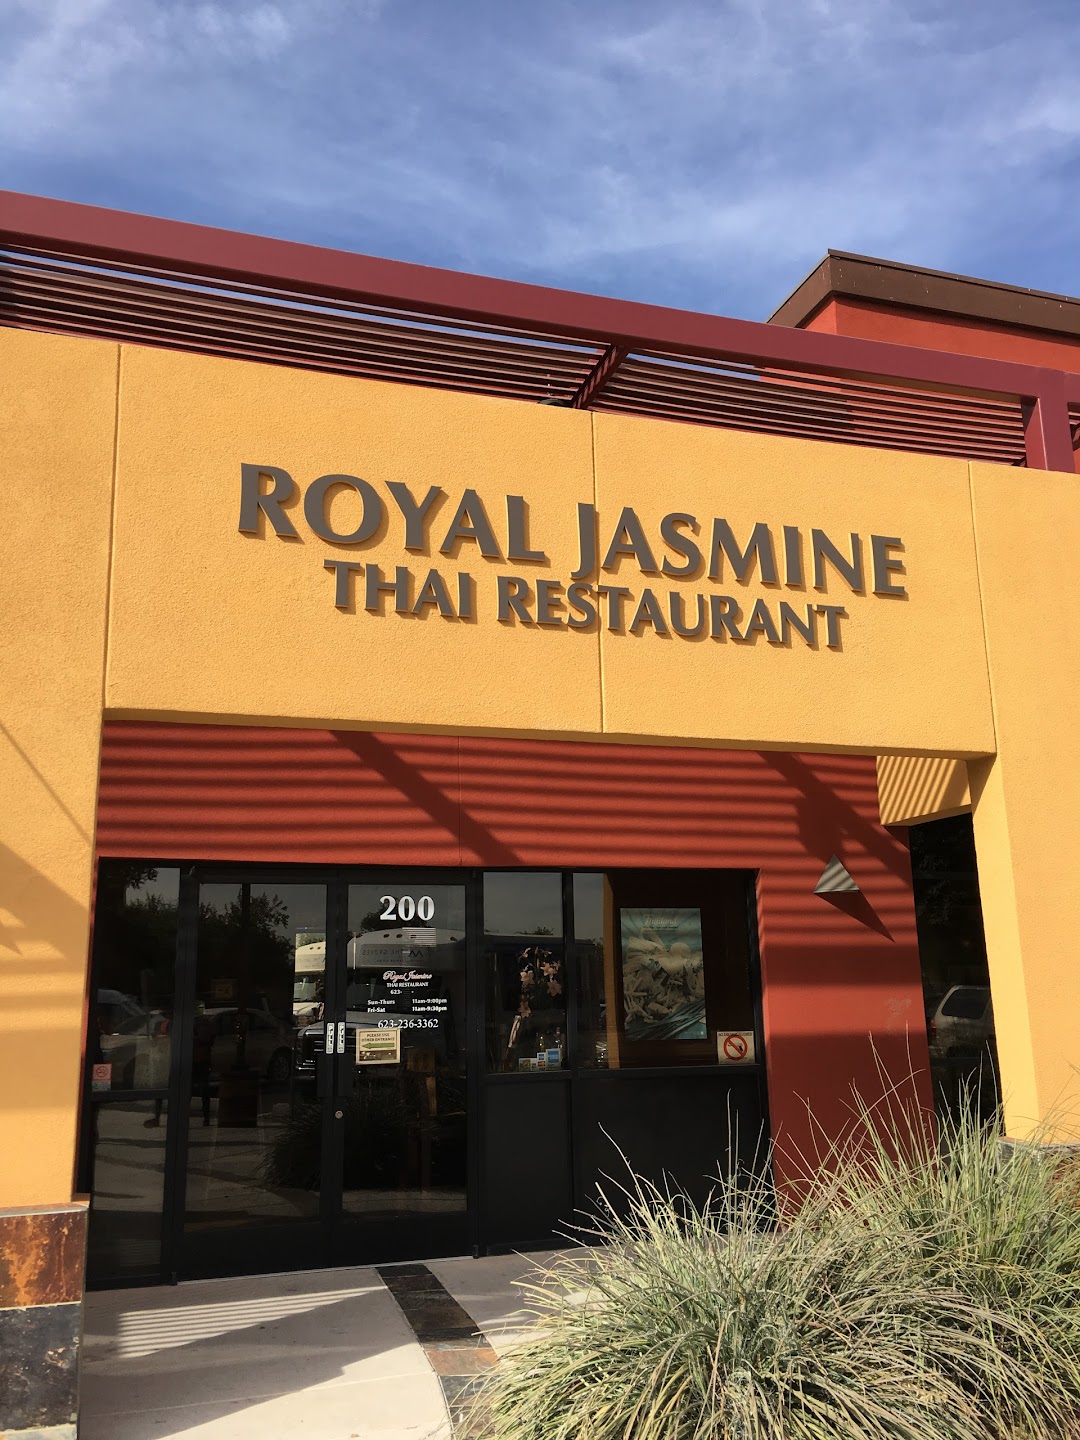 Royal Jasmine Thai Restaurant